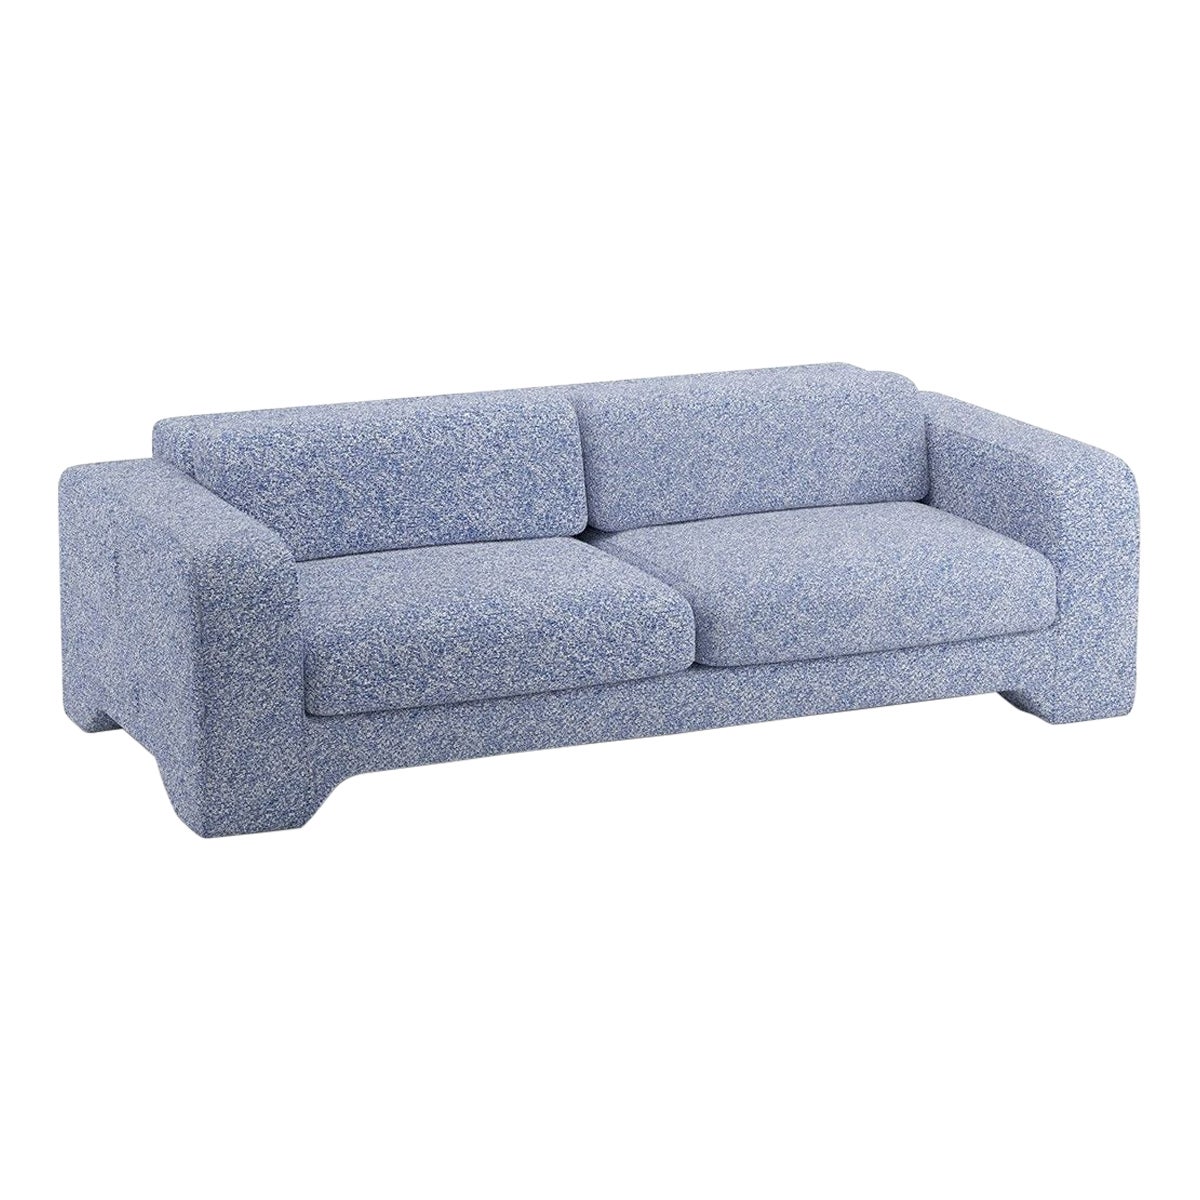 Popus Editions Giovanna 4 Seater Sofa in Ocean Zanzi Linen Fabric